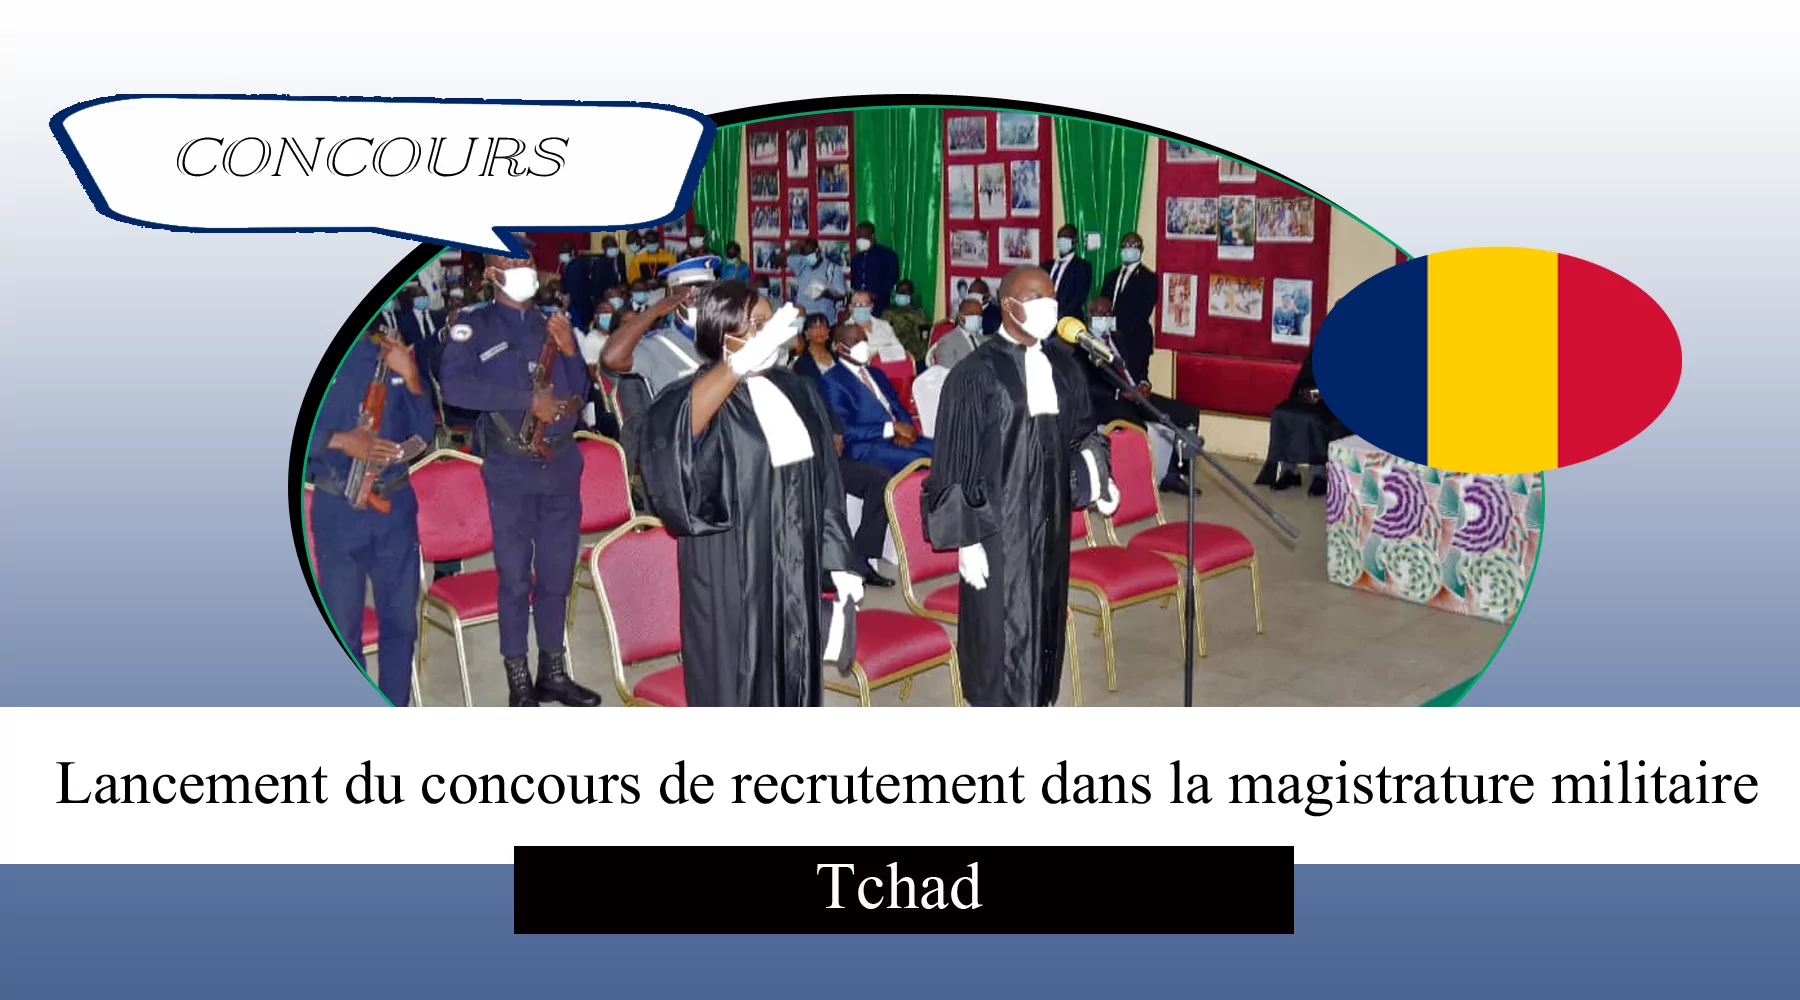 Lancement du concours de recrutement dans la magistrature militaire, Tchad